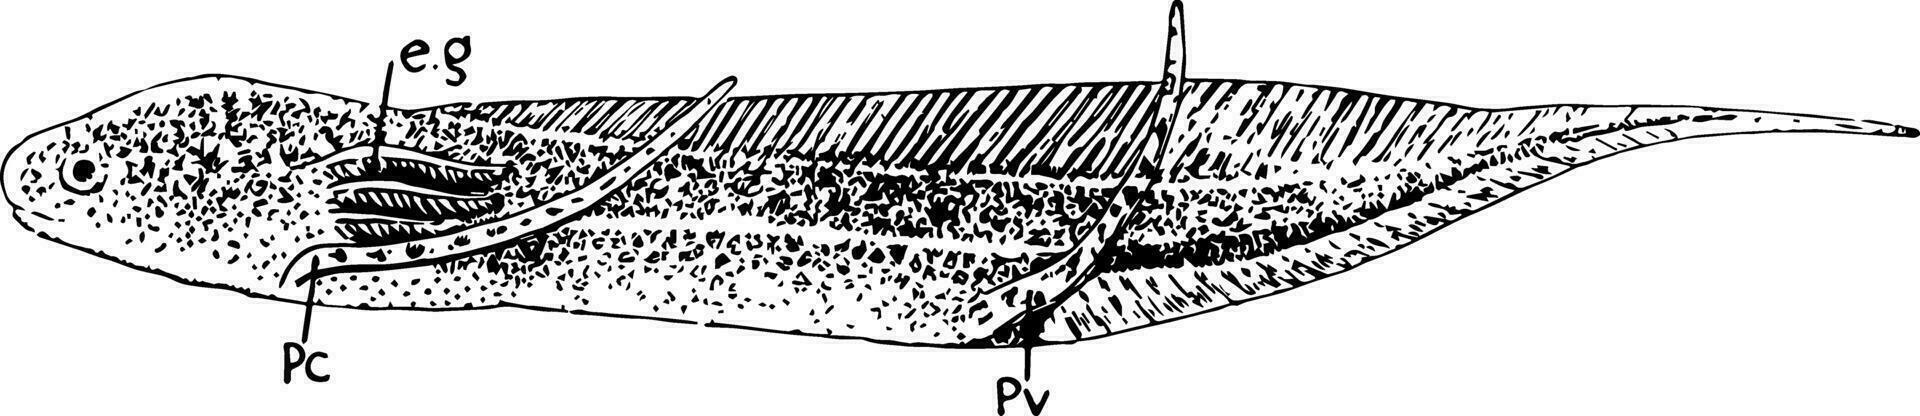 afrikansk lungfisk larv, årgång illustration. vektor